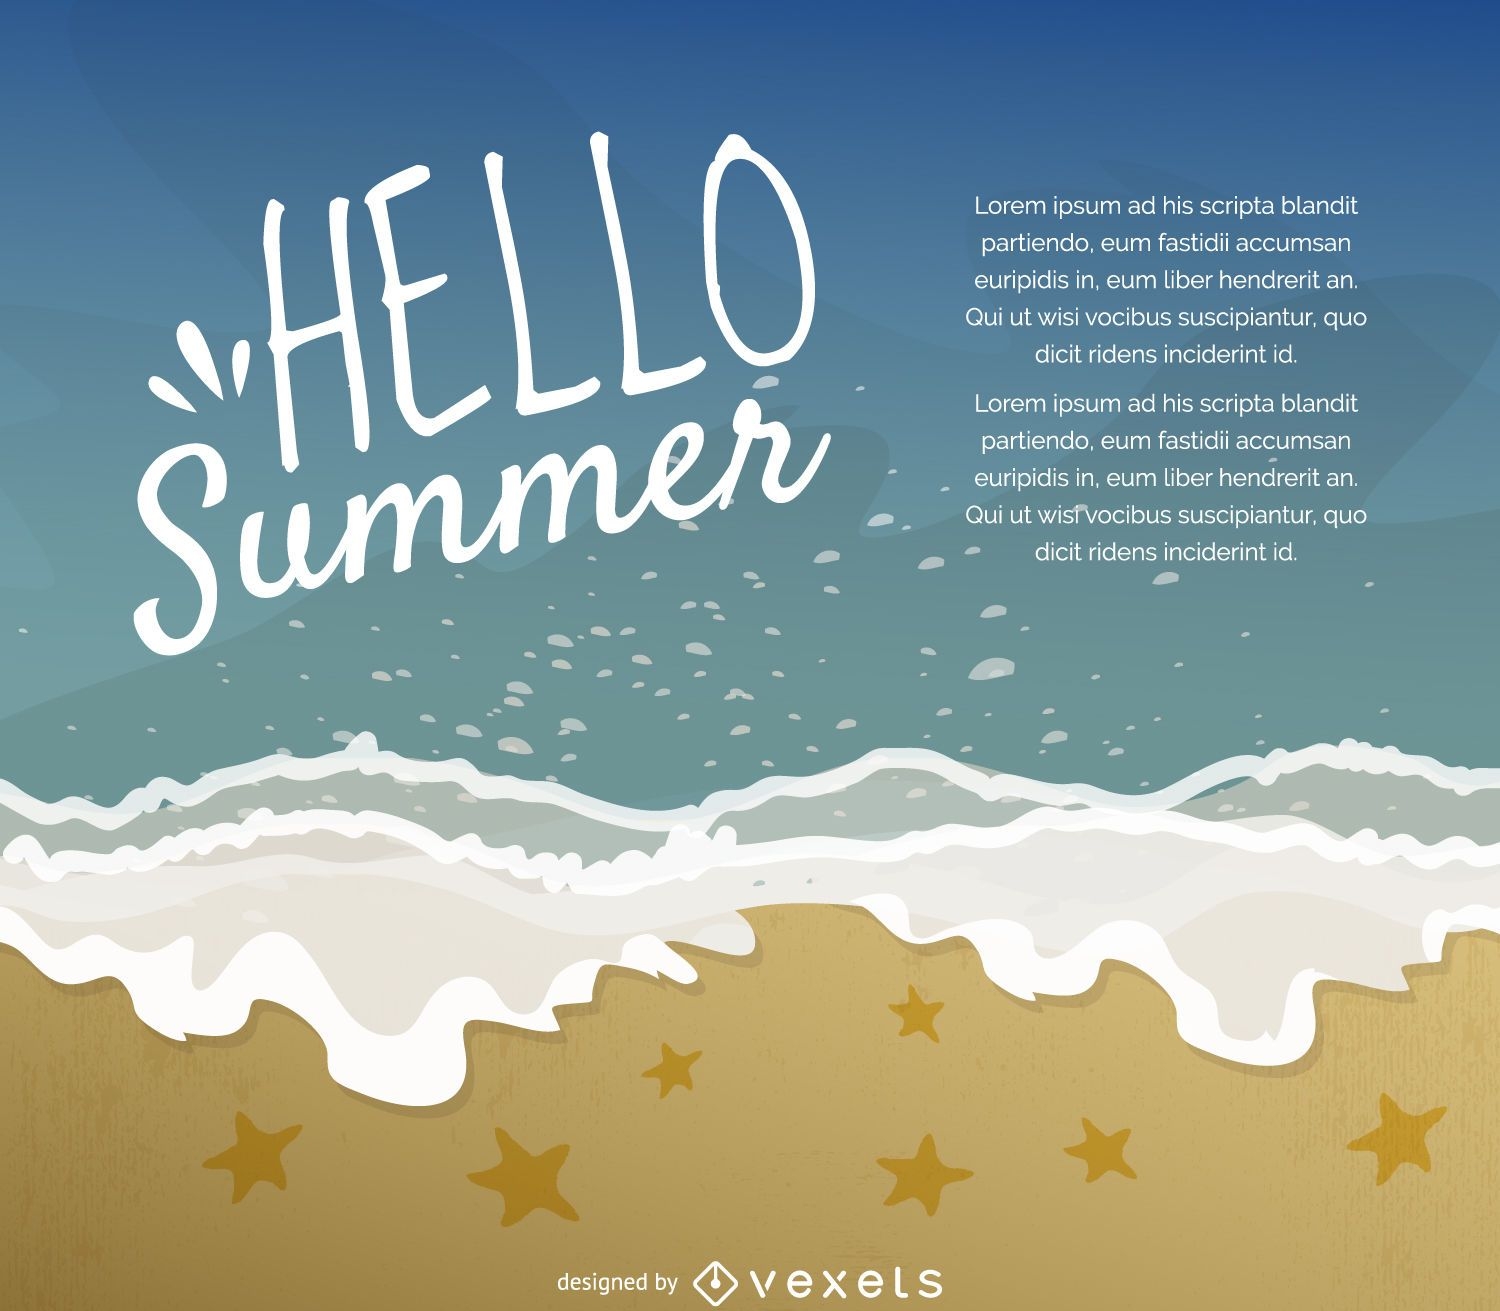 Hello summer illustration poster